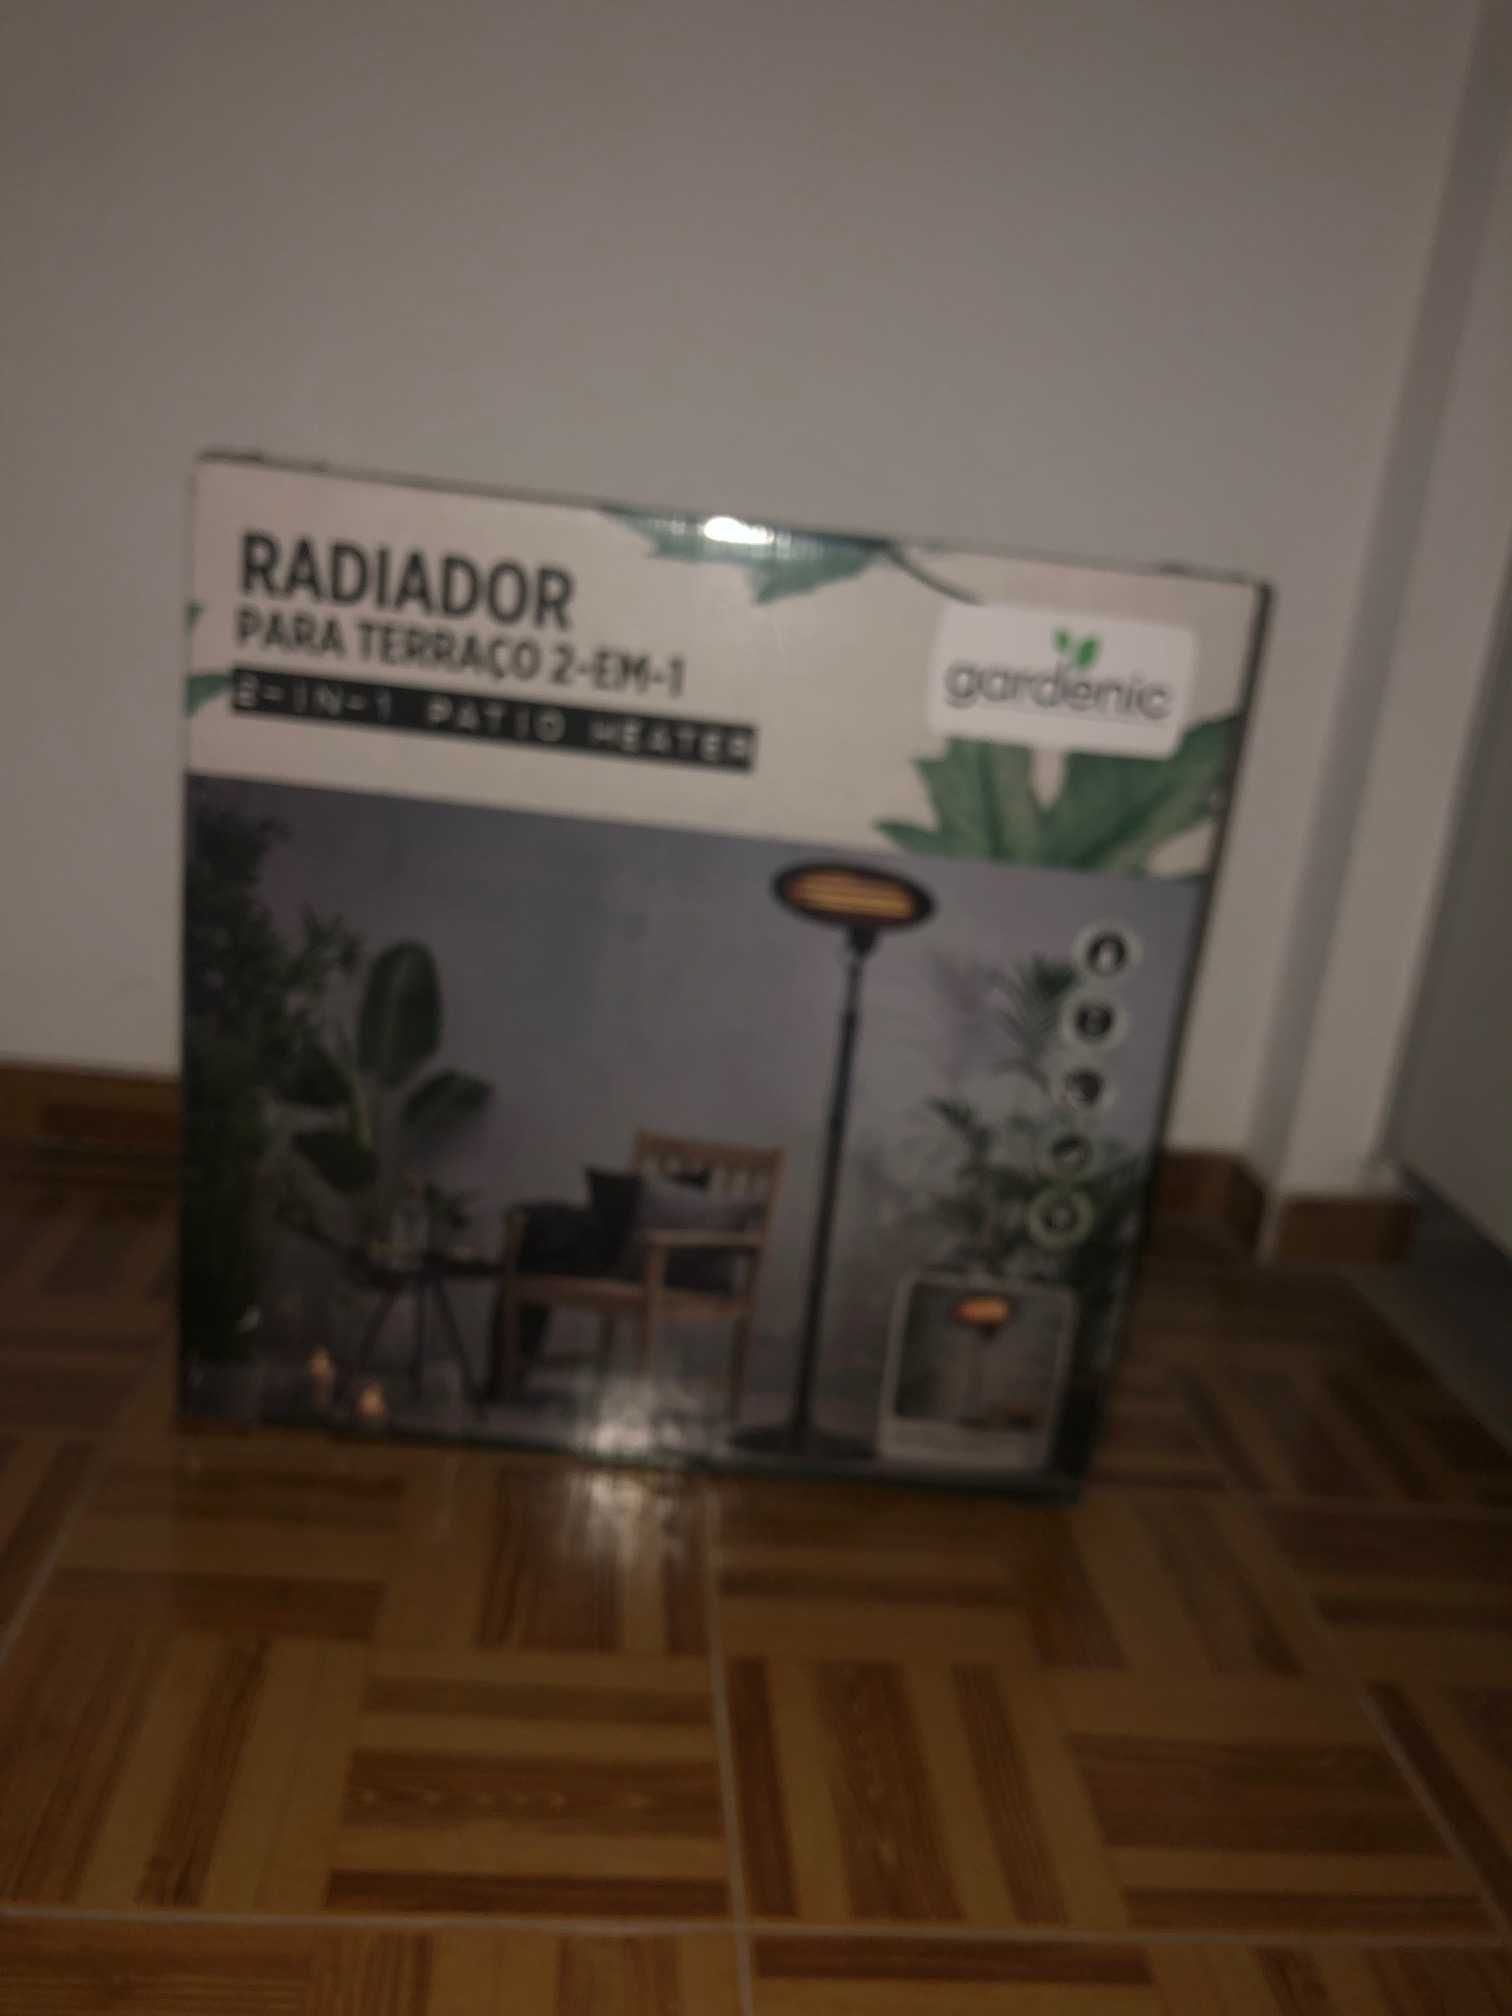 Radiador para Terraço 2 em 1 - Patio Heater Gardenic